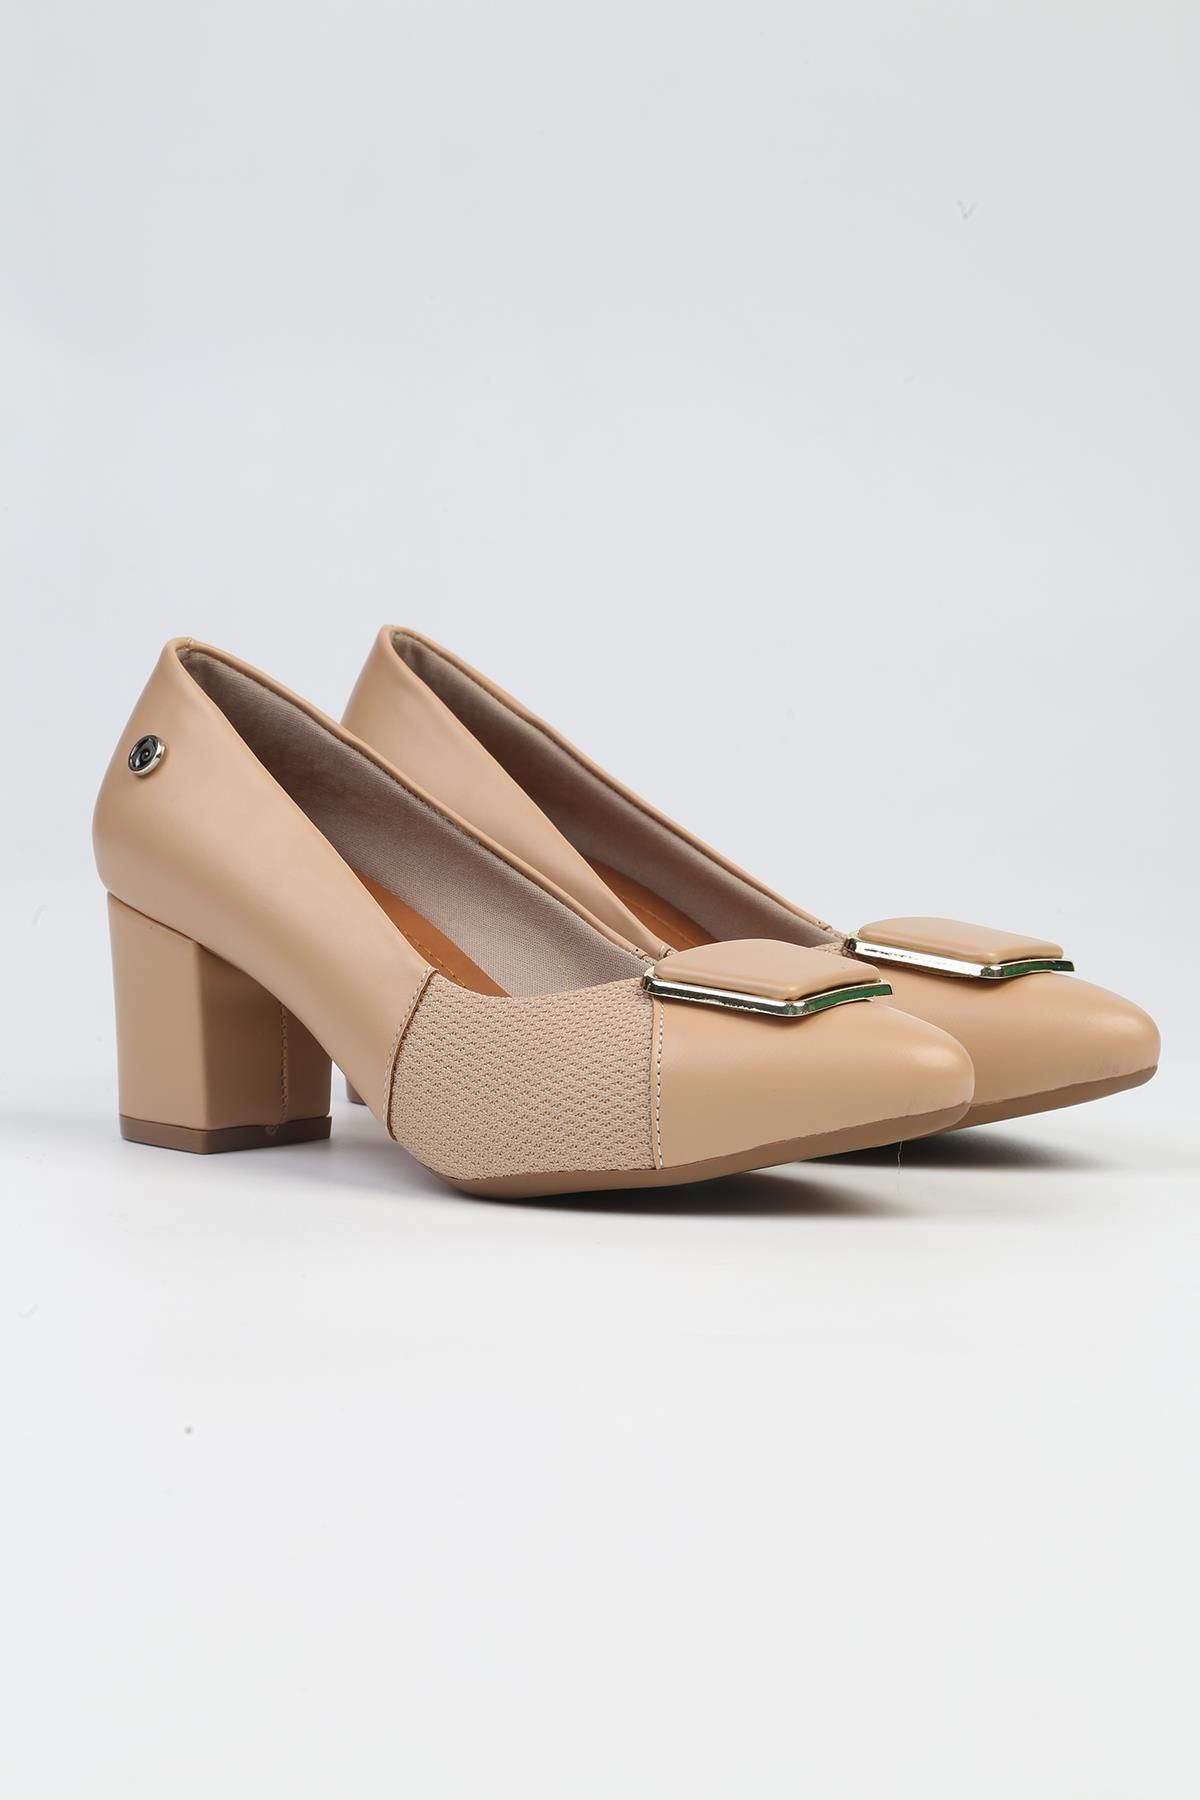 Pierre Cardin ® | PC-53099- 3592 Bej Cilt-Kadın Topuklu Ayakkabı